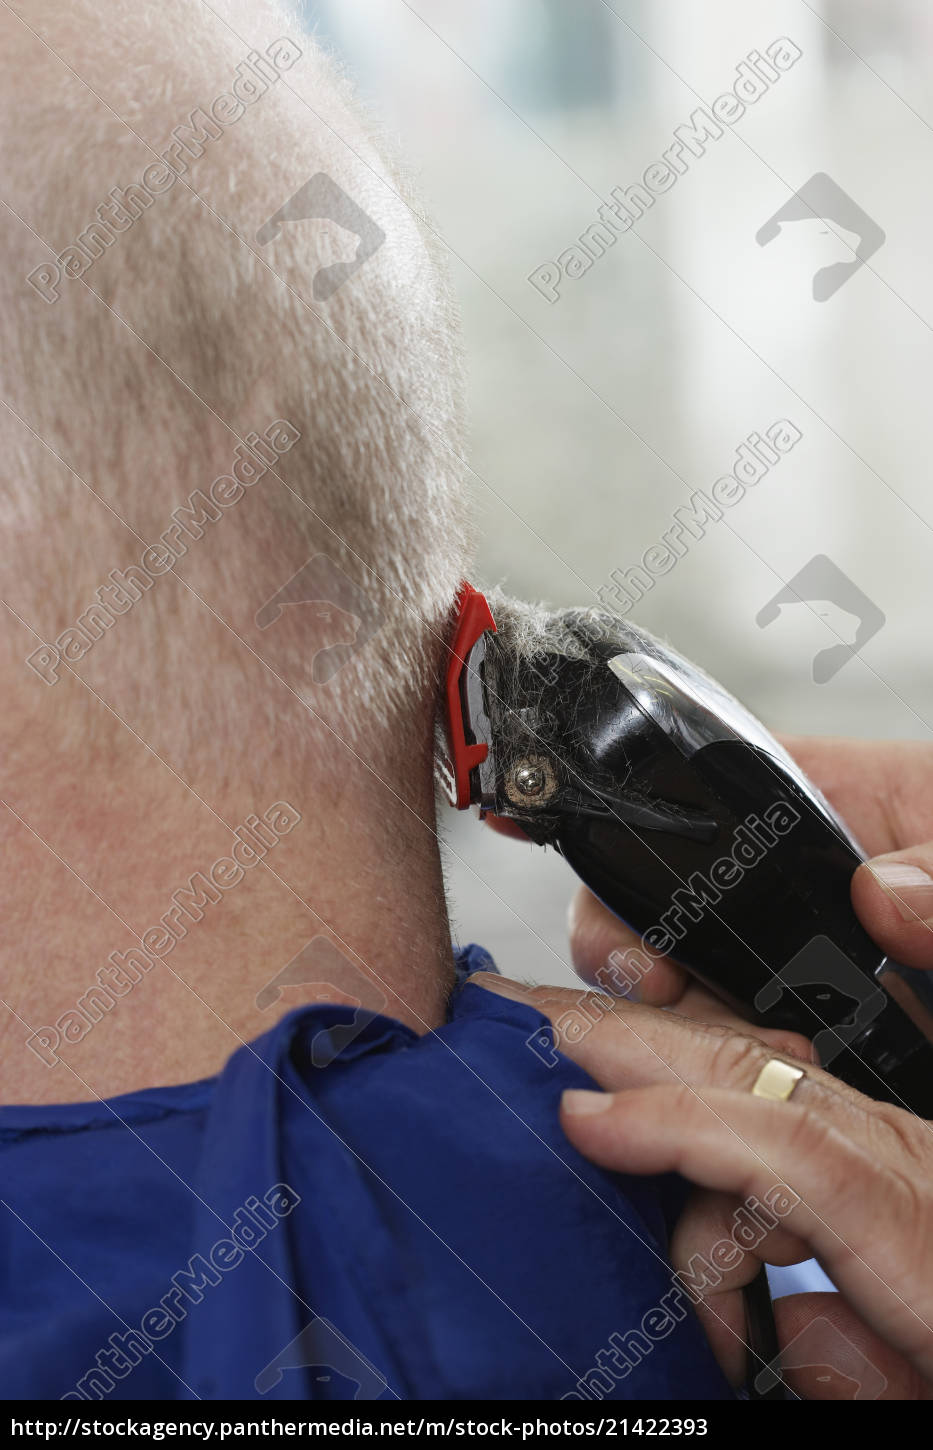 Haare rasieren mann kopf